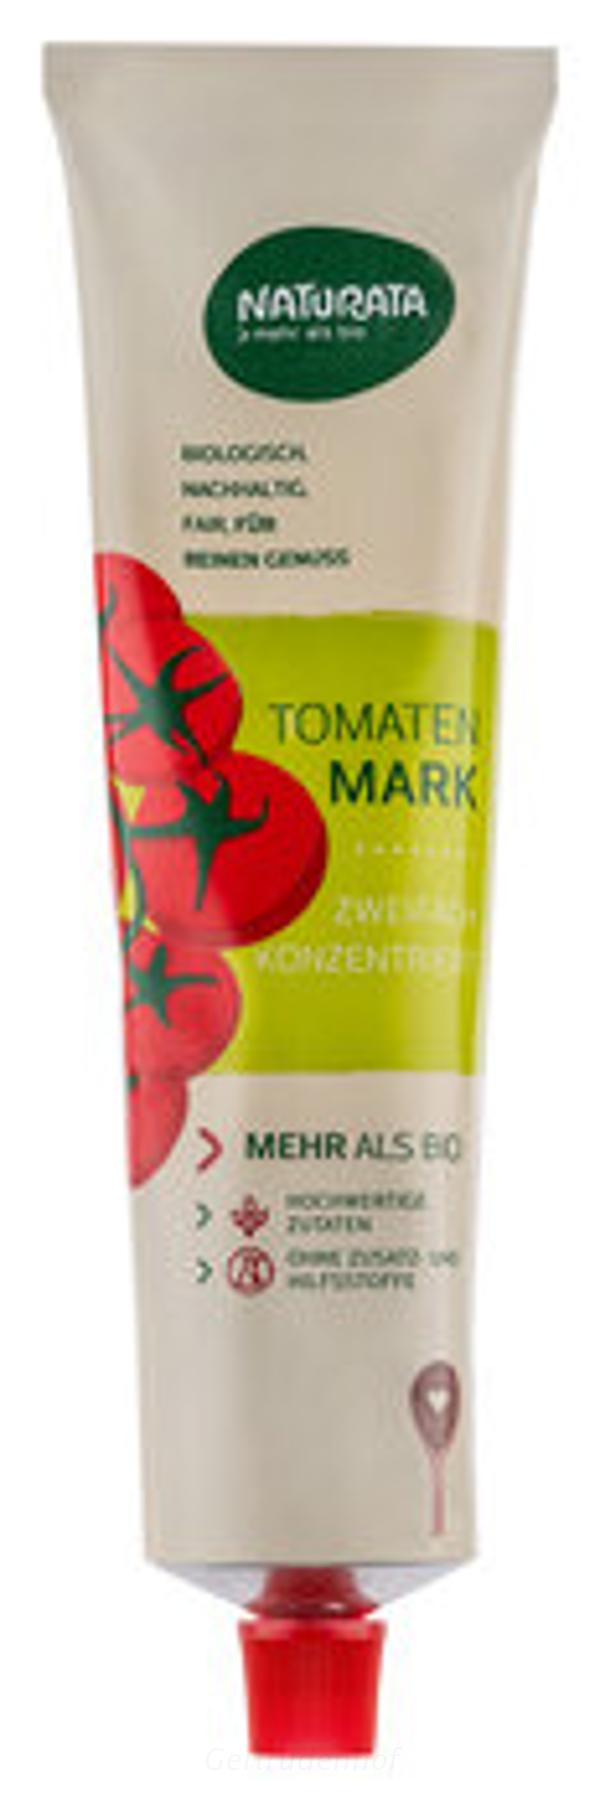 Produktfoto zu Tomatenmark Tube 200g  (NAT)